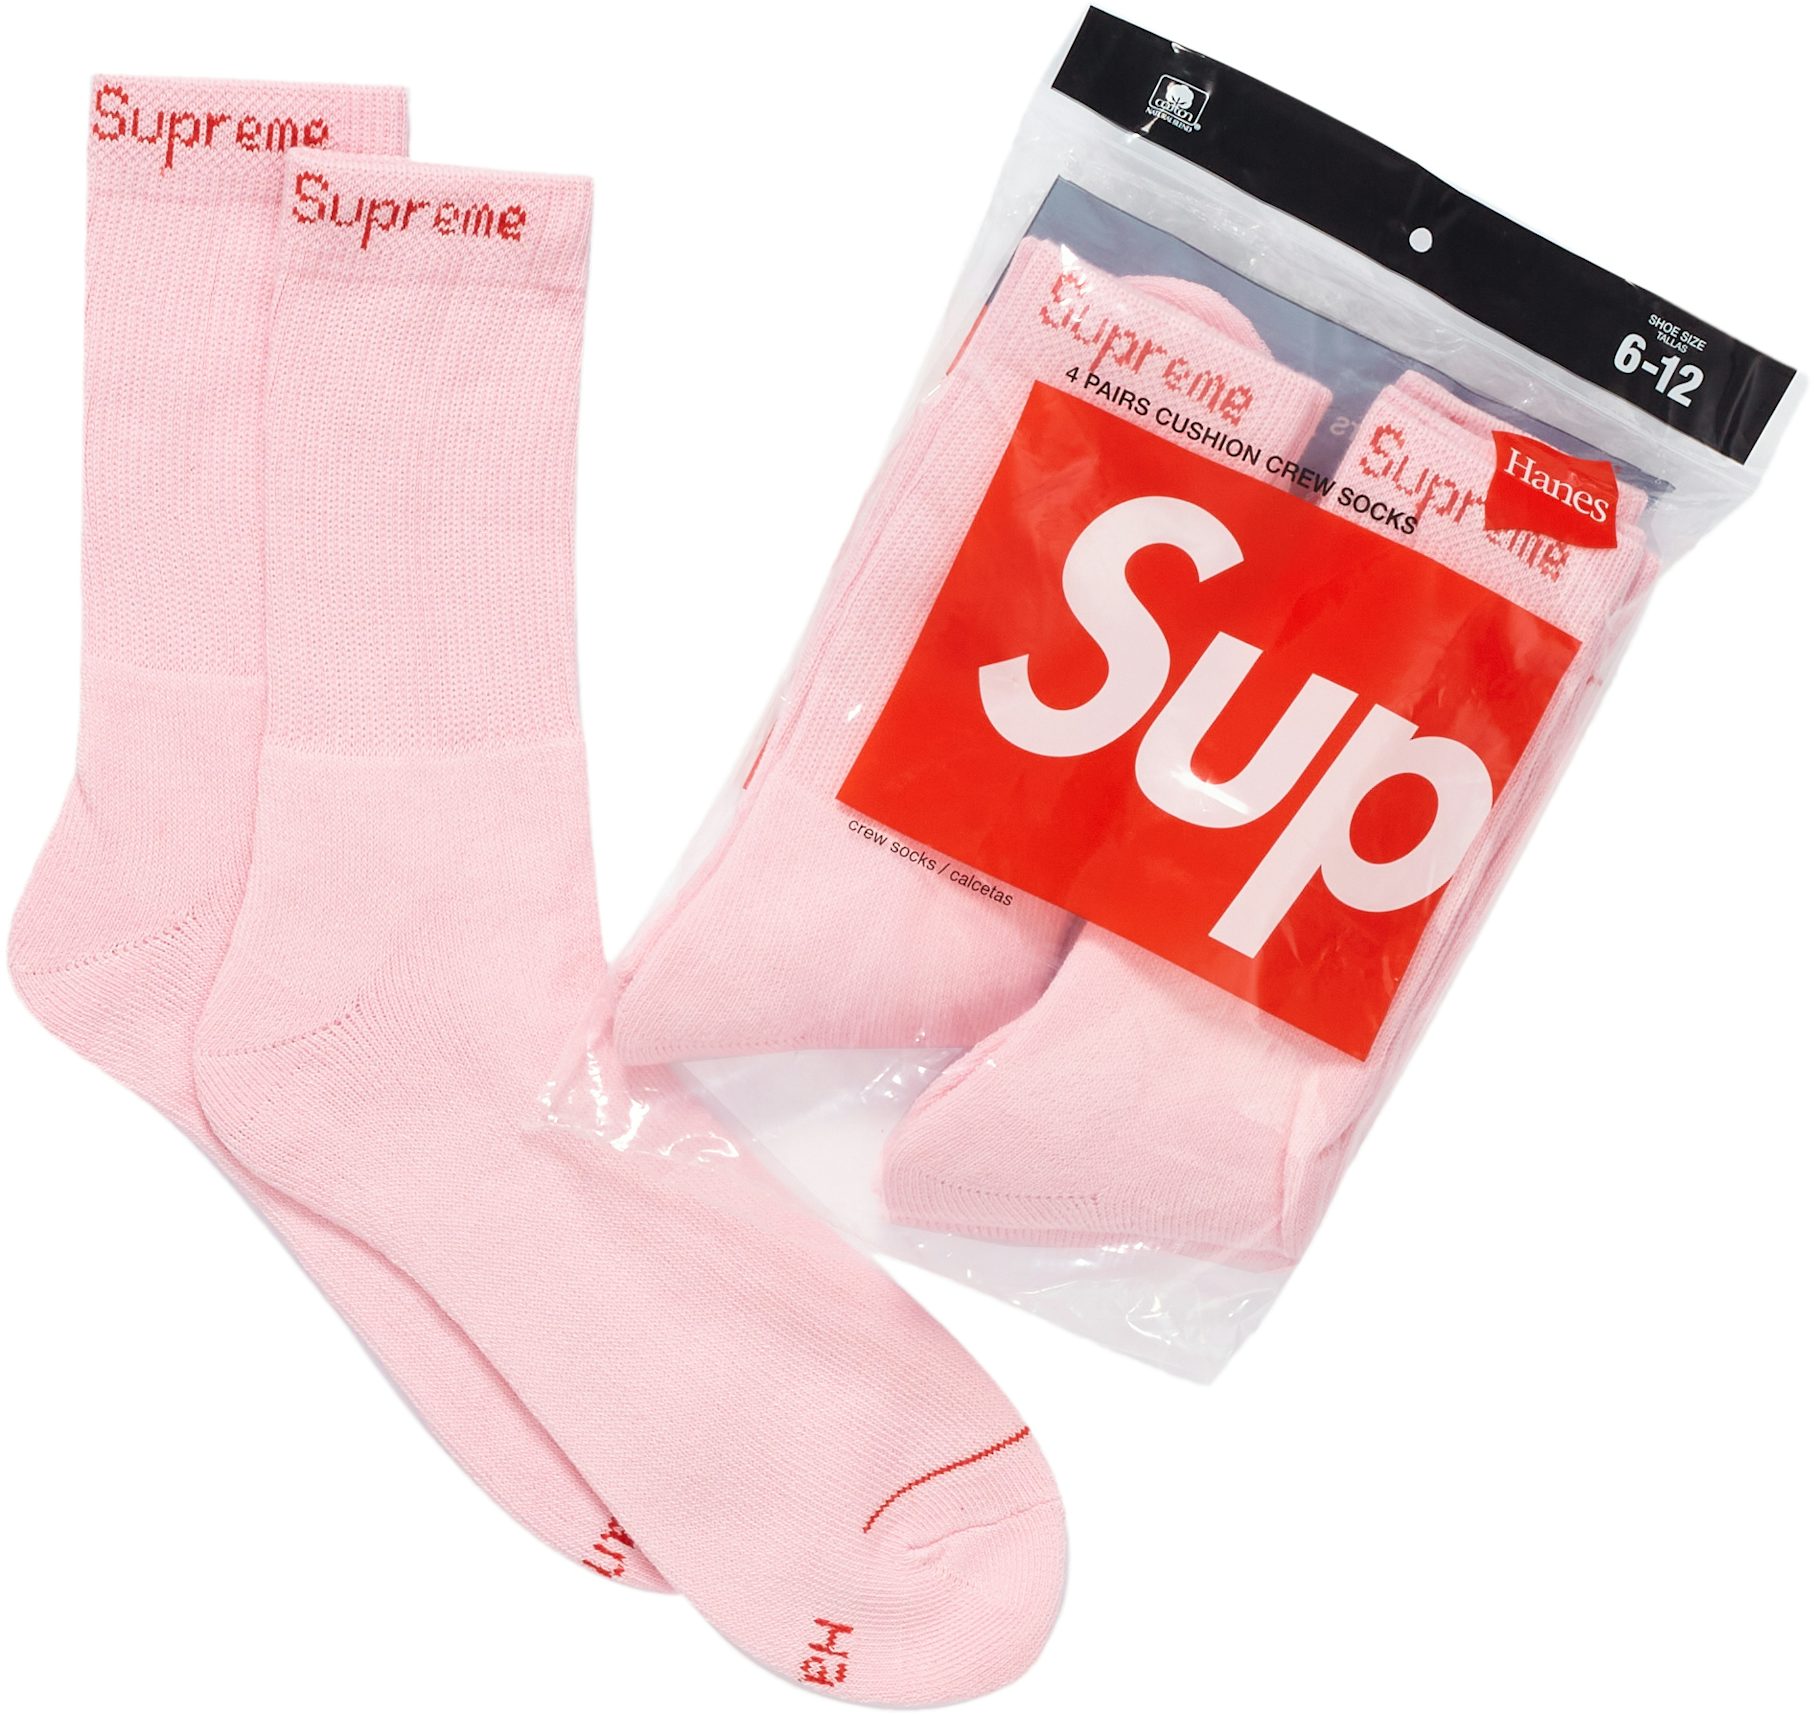 supreme louis vuitton socks